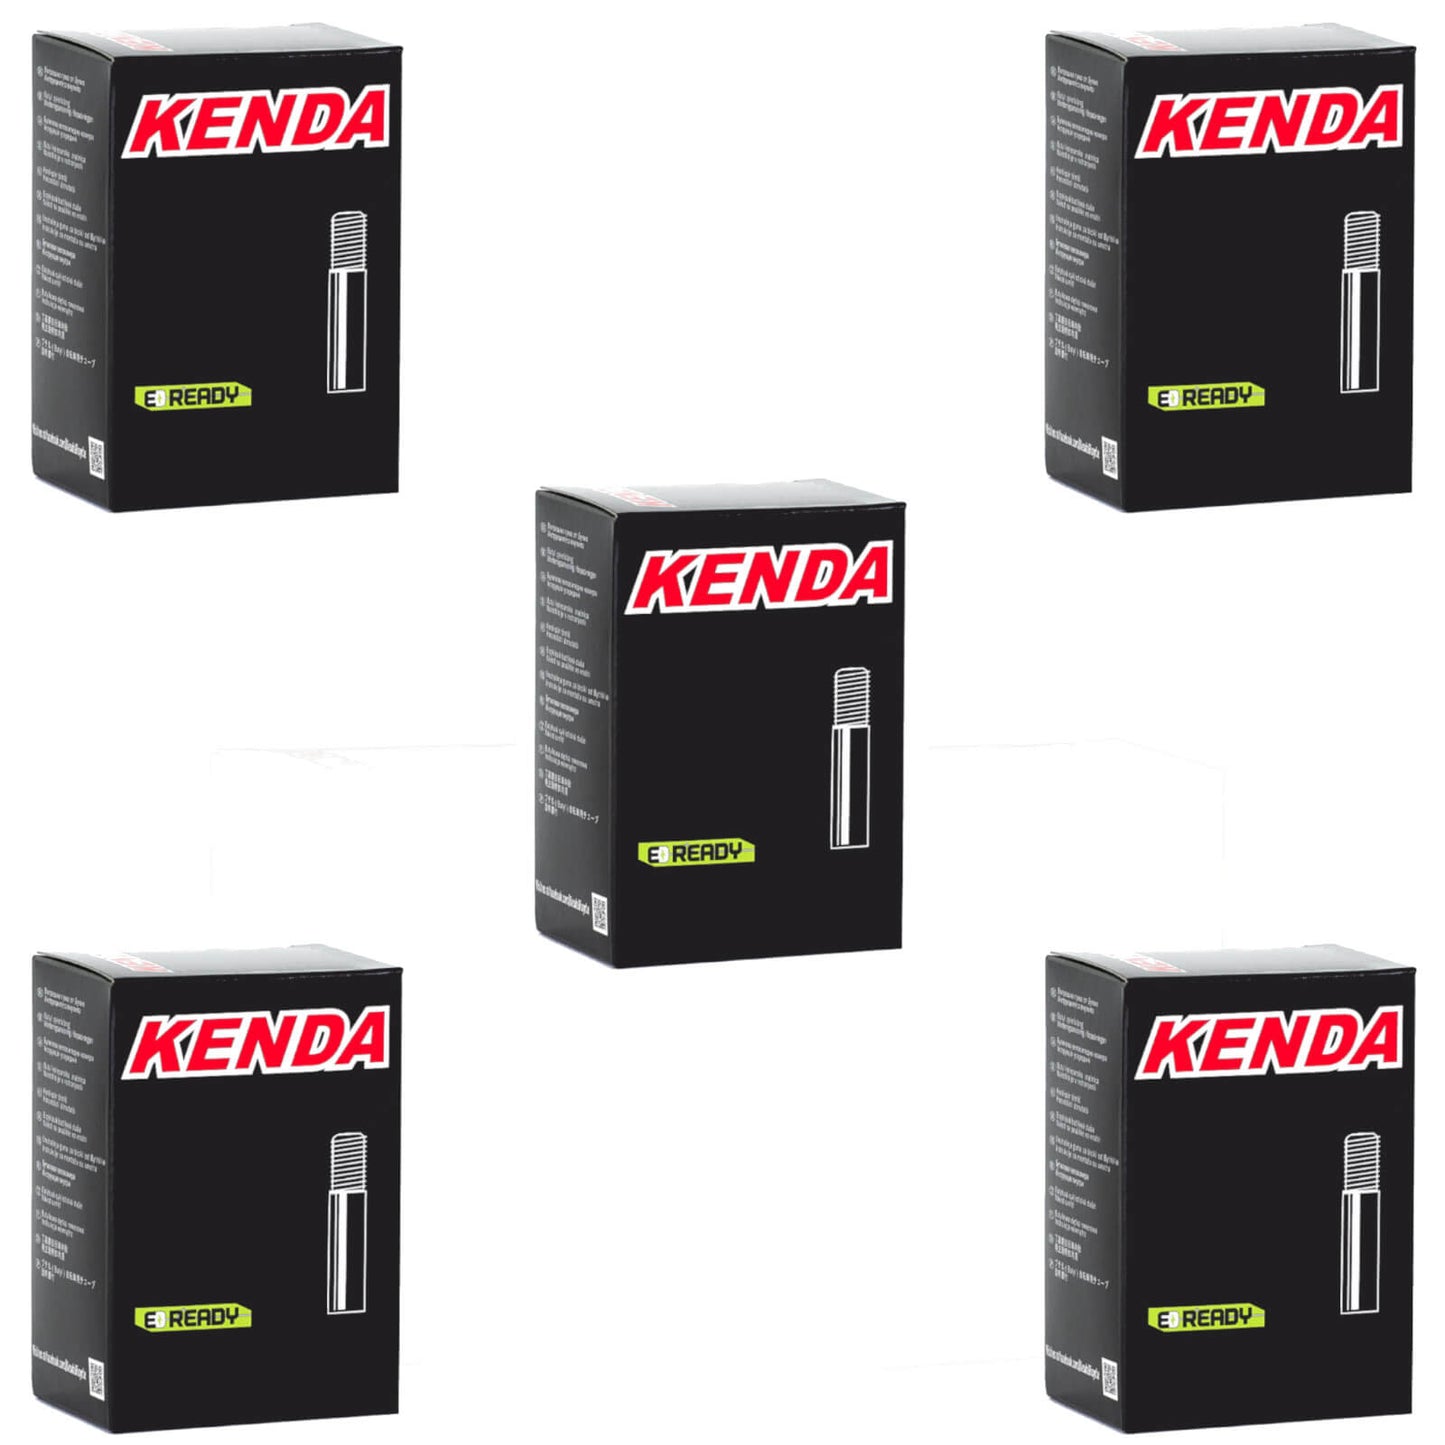 Kenda 24x2.75-3.0" 24 Inch Schrader Valve Bike Inner Tube Pack of 5